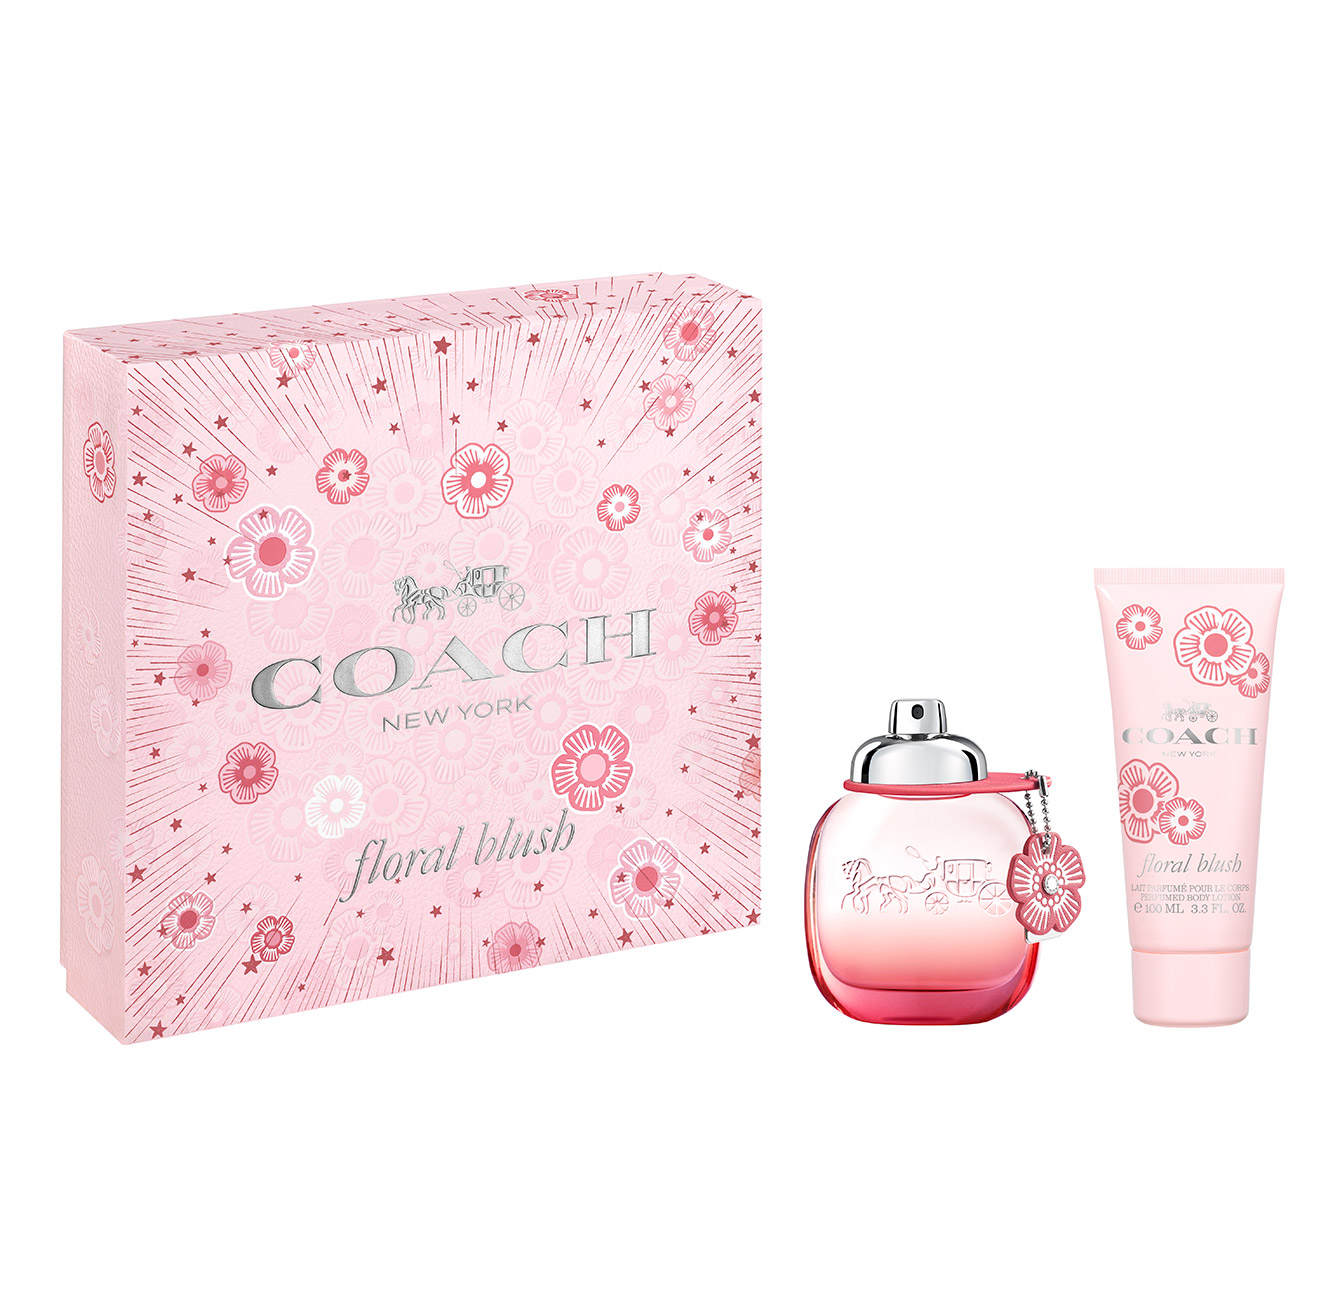 COACH - Coffret Floral Blush 50ml